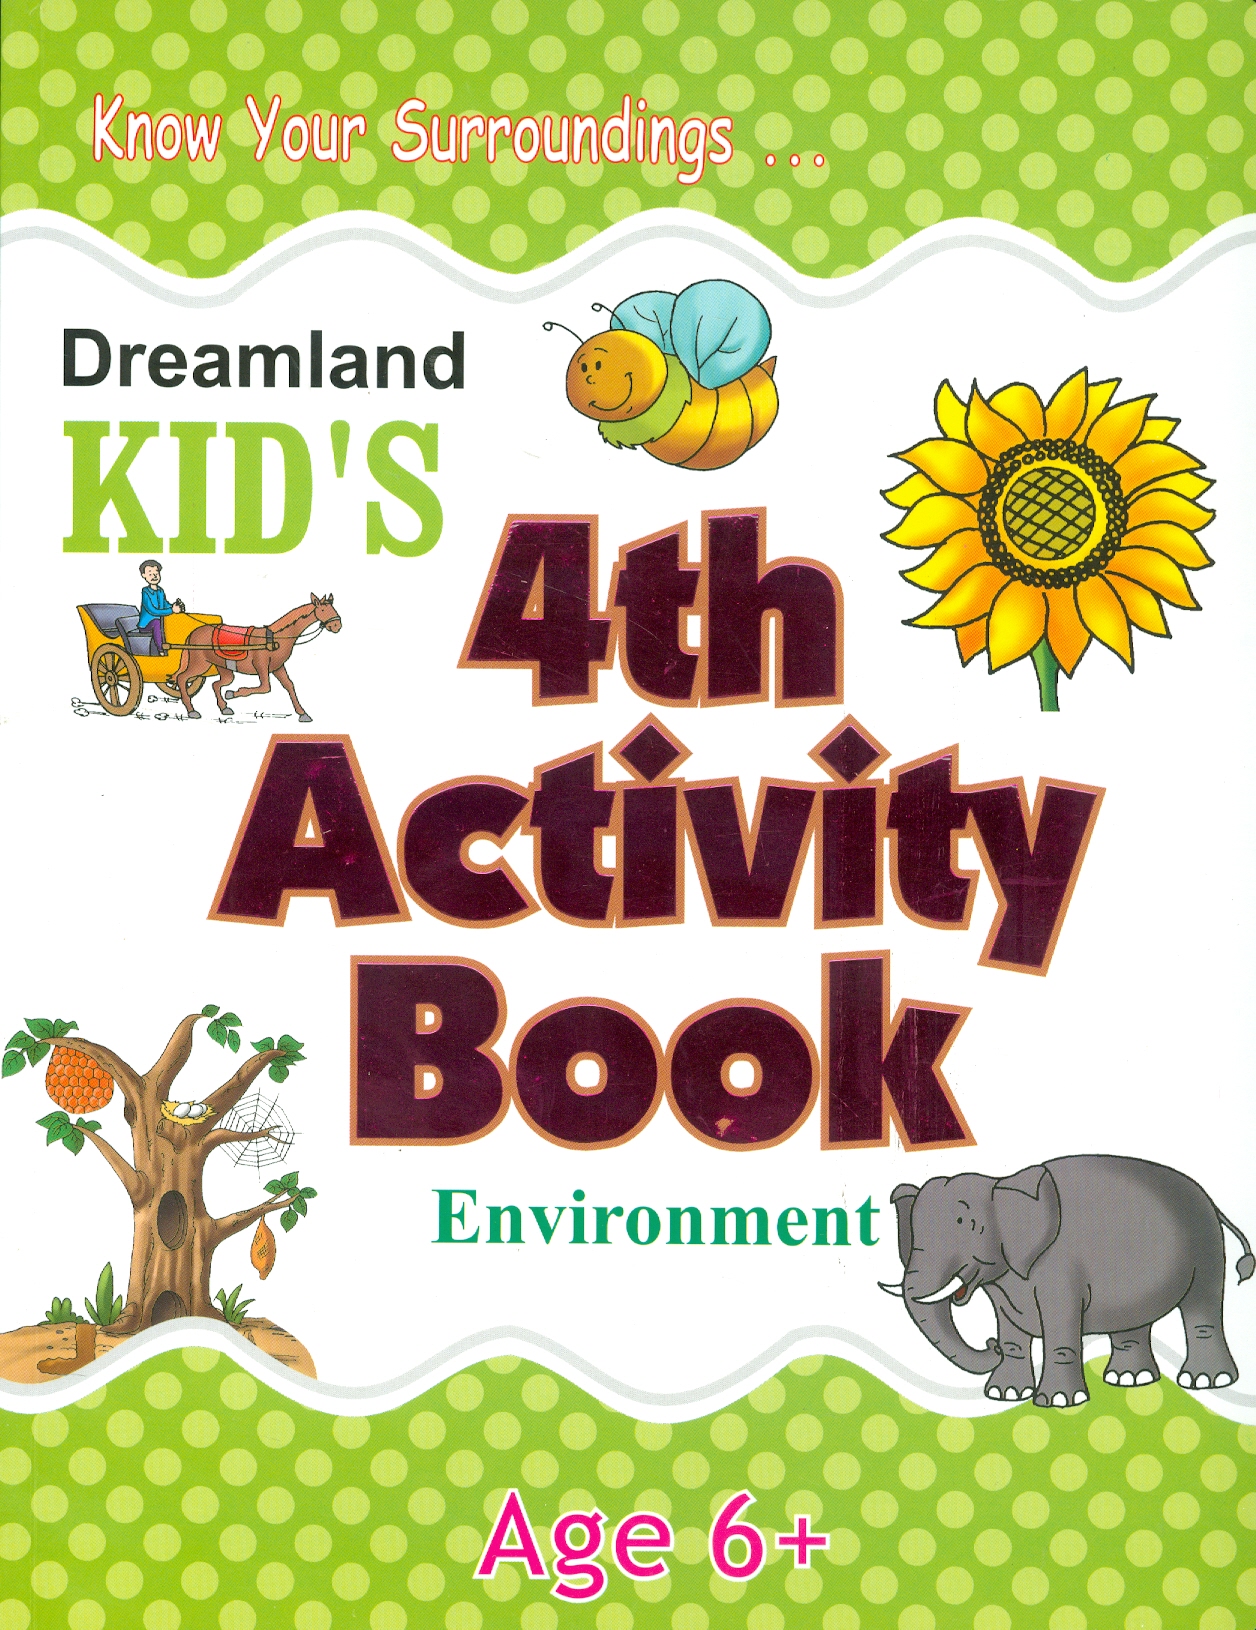 Kid's 4th Activity Book Environment - Age 6+ (Know Your Surroundings) (Các Hoạt Động Môi Trường Cho Trẻ 6+: Thiên Nhiên Diệu Kỳ)